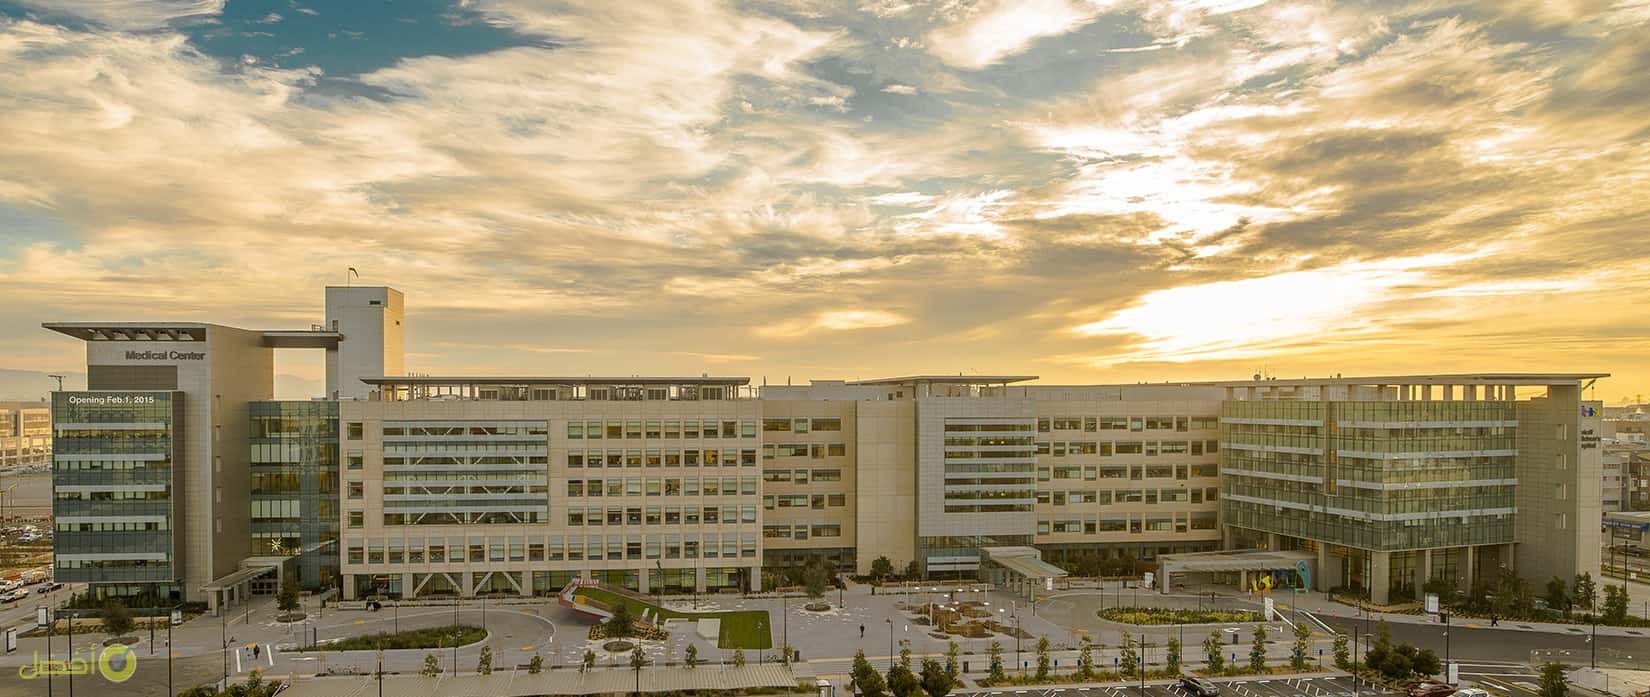 يو سي إف إس UCSF Medical Center